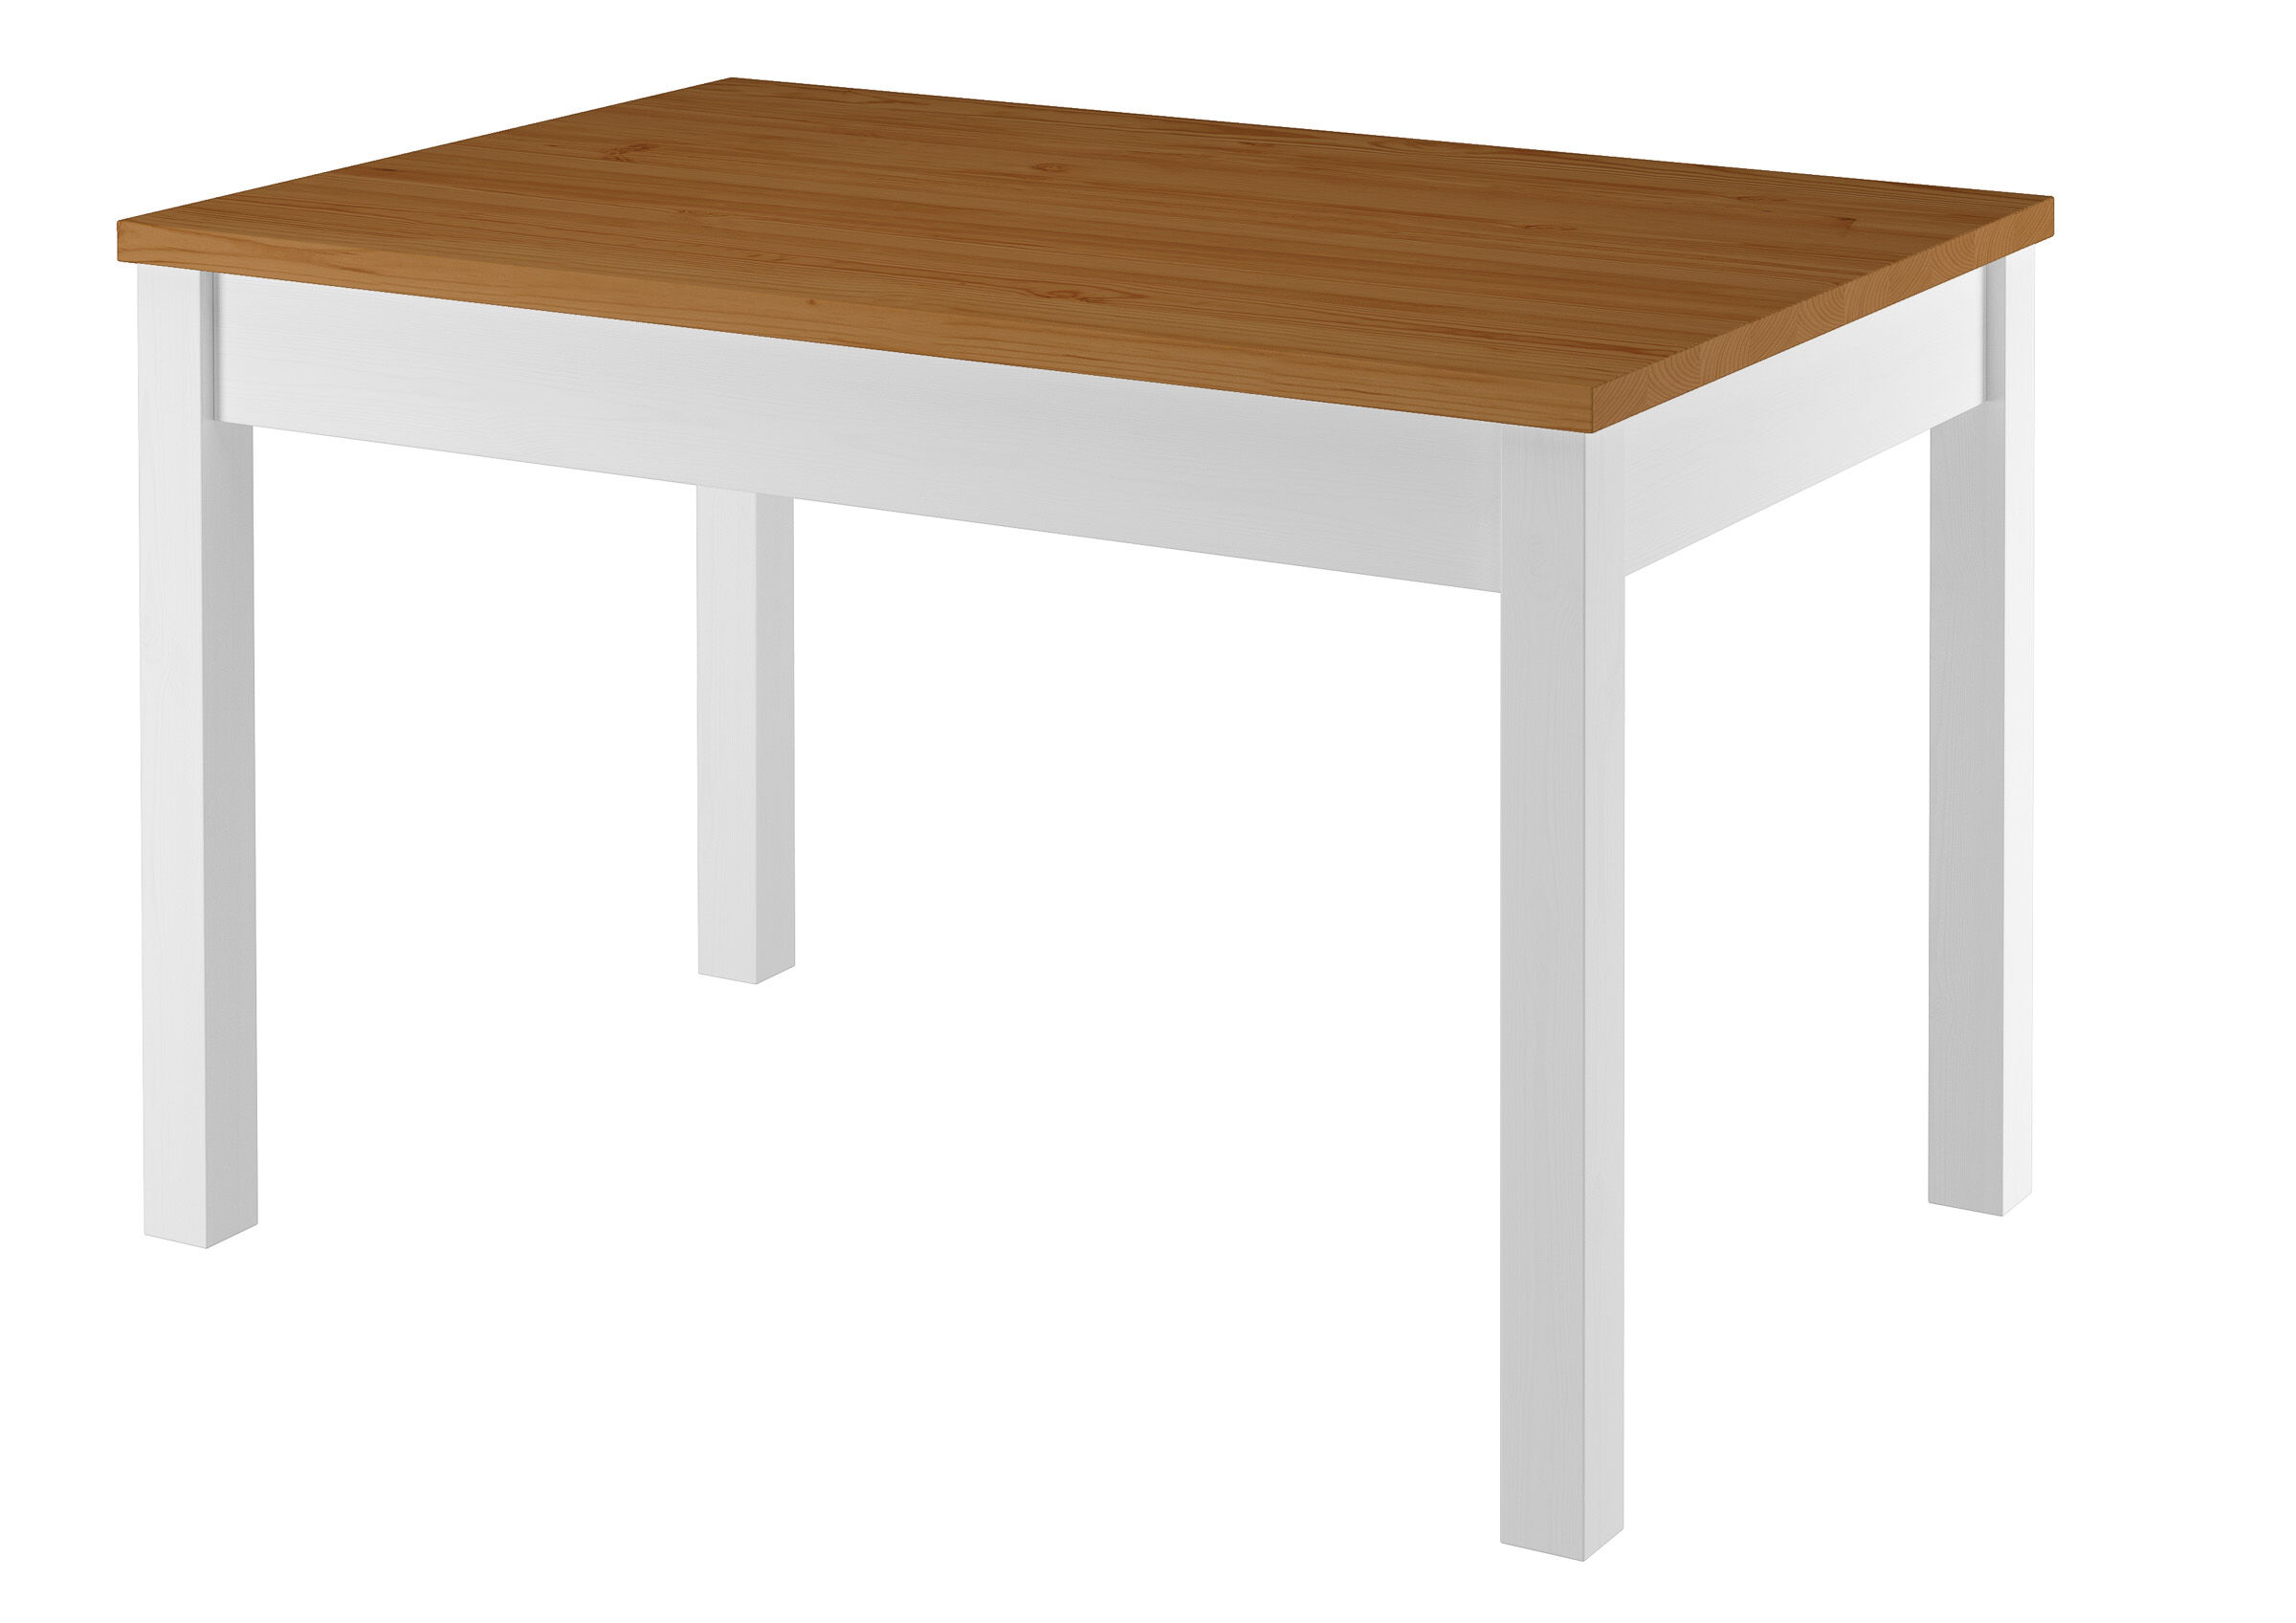 Stabiler Esszimmertisch aus massiver Kiefer, waschweiß lackiert, Tischplatte eiche gebeizt, 80 x 120 cm, Tischbeine Glatt